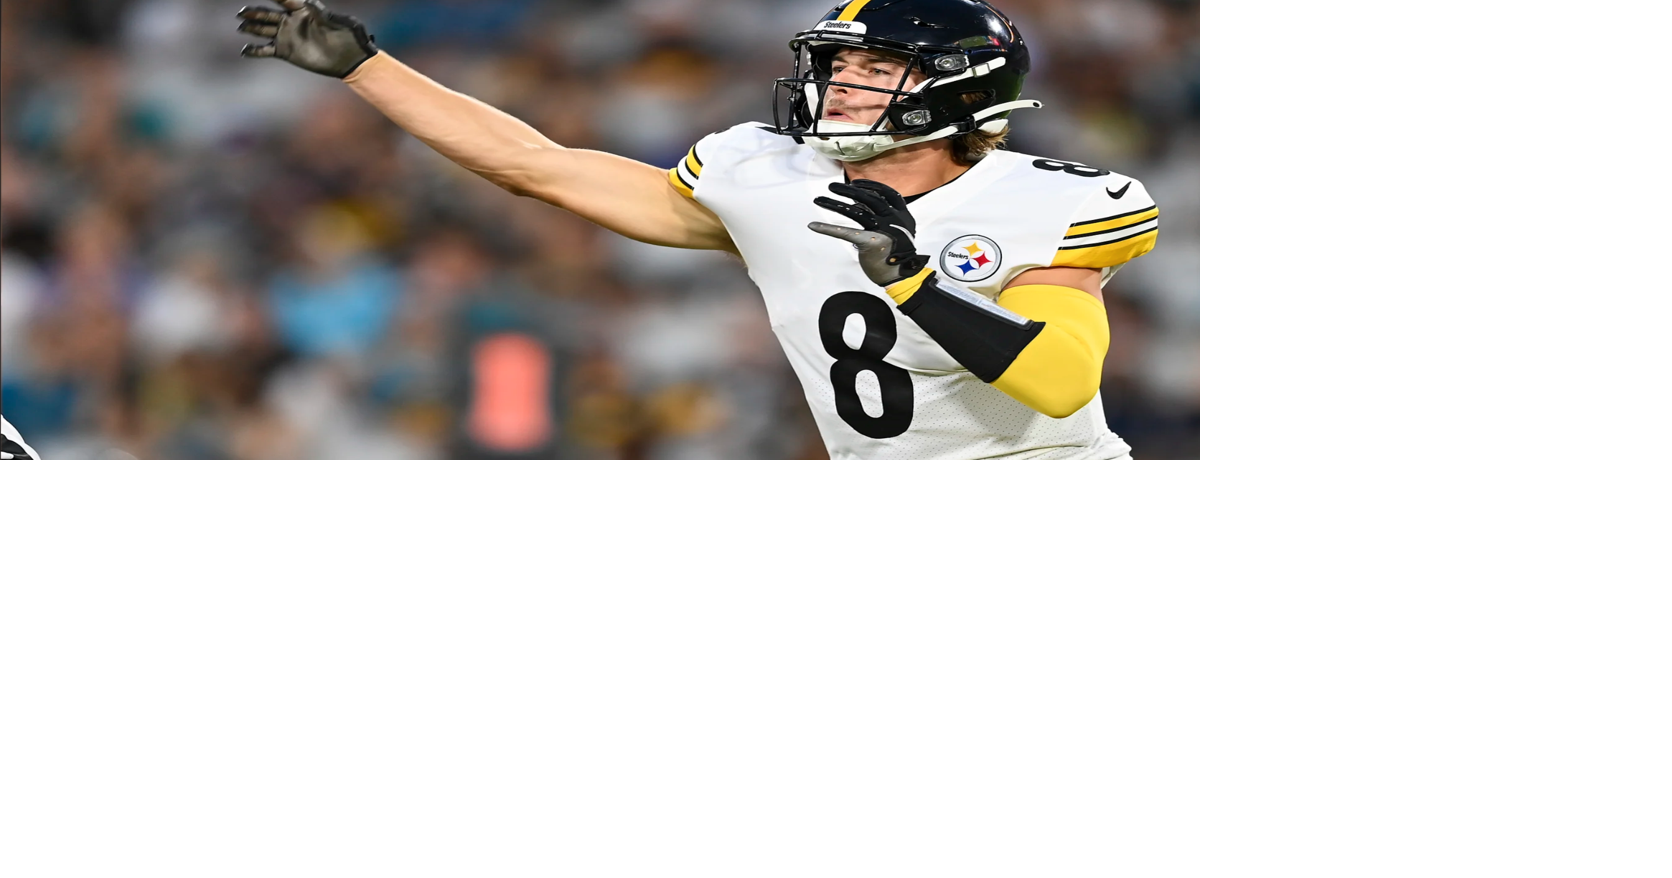 Kenny Pickett stars in debut, leads Steelers to preseason win